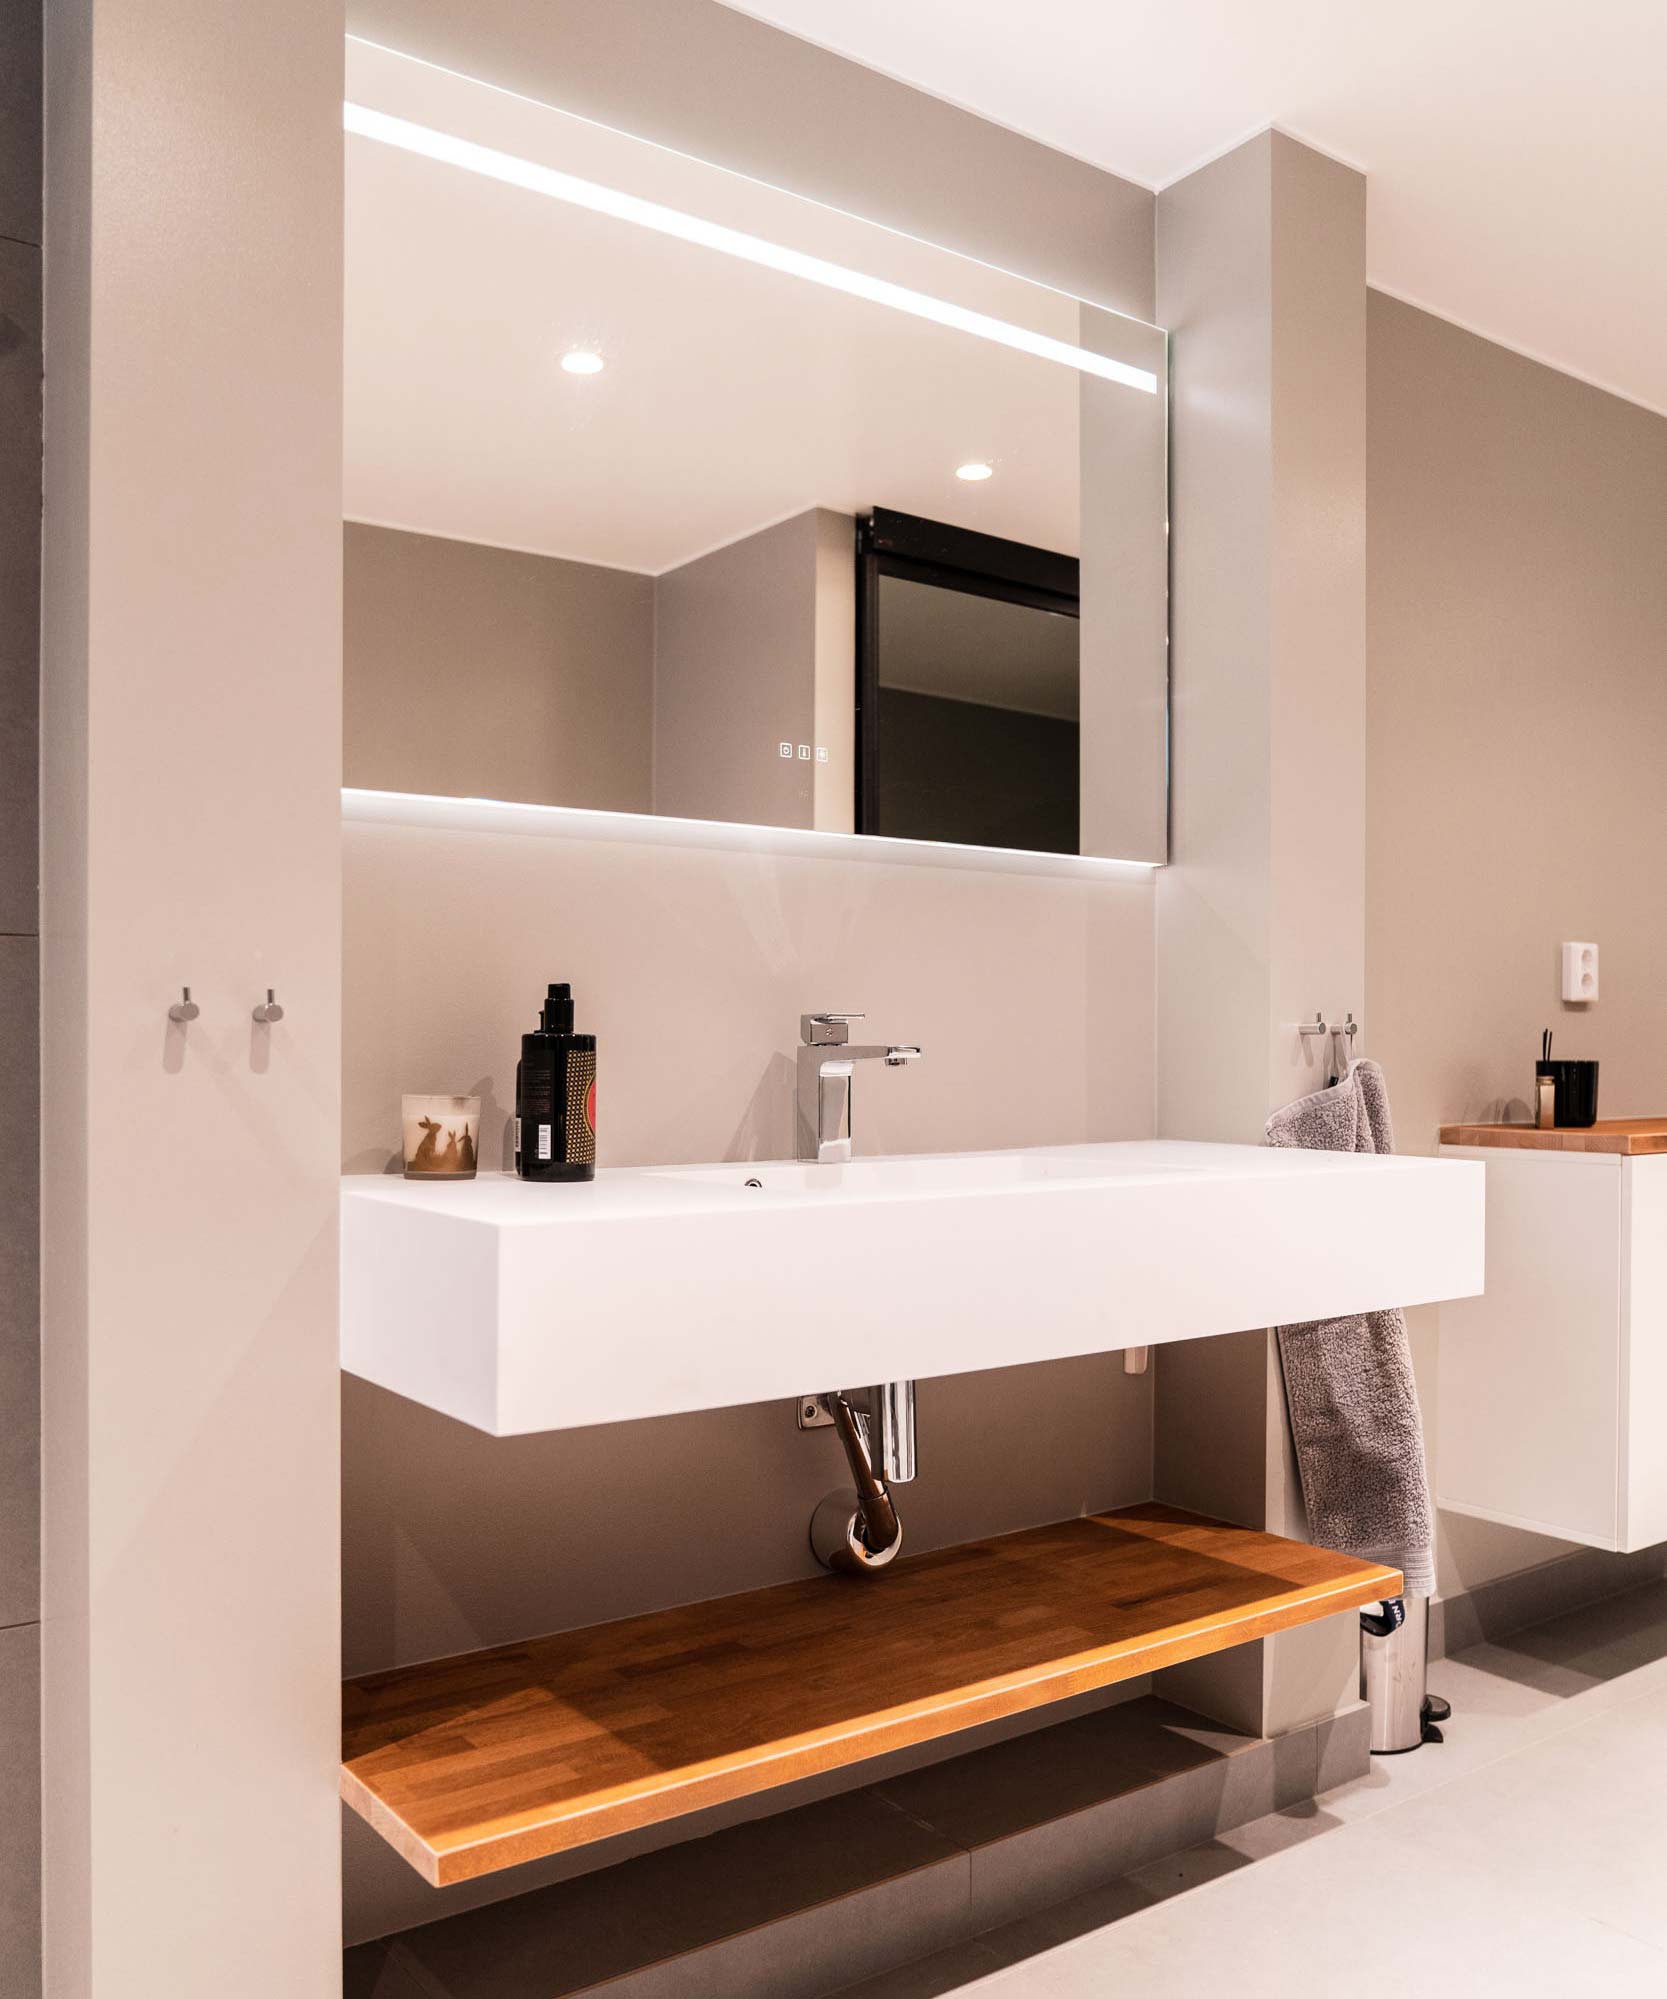 Lyxigt badrum med beiga väggar, ett stort vitt avlångt handfat med kantiga hörn samt en stor spegel med inbyggd belysning